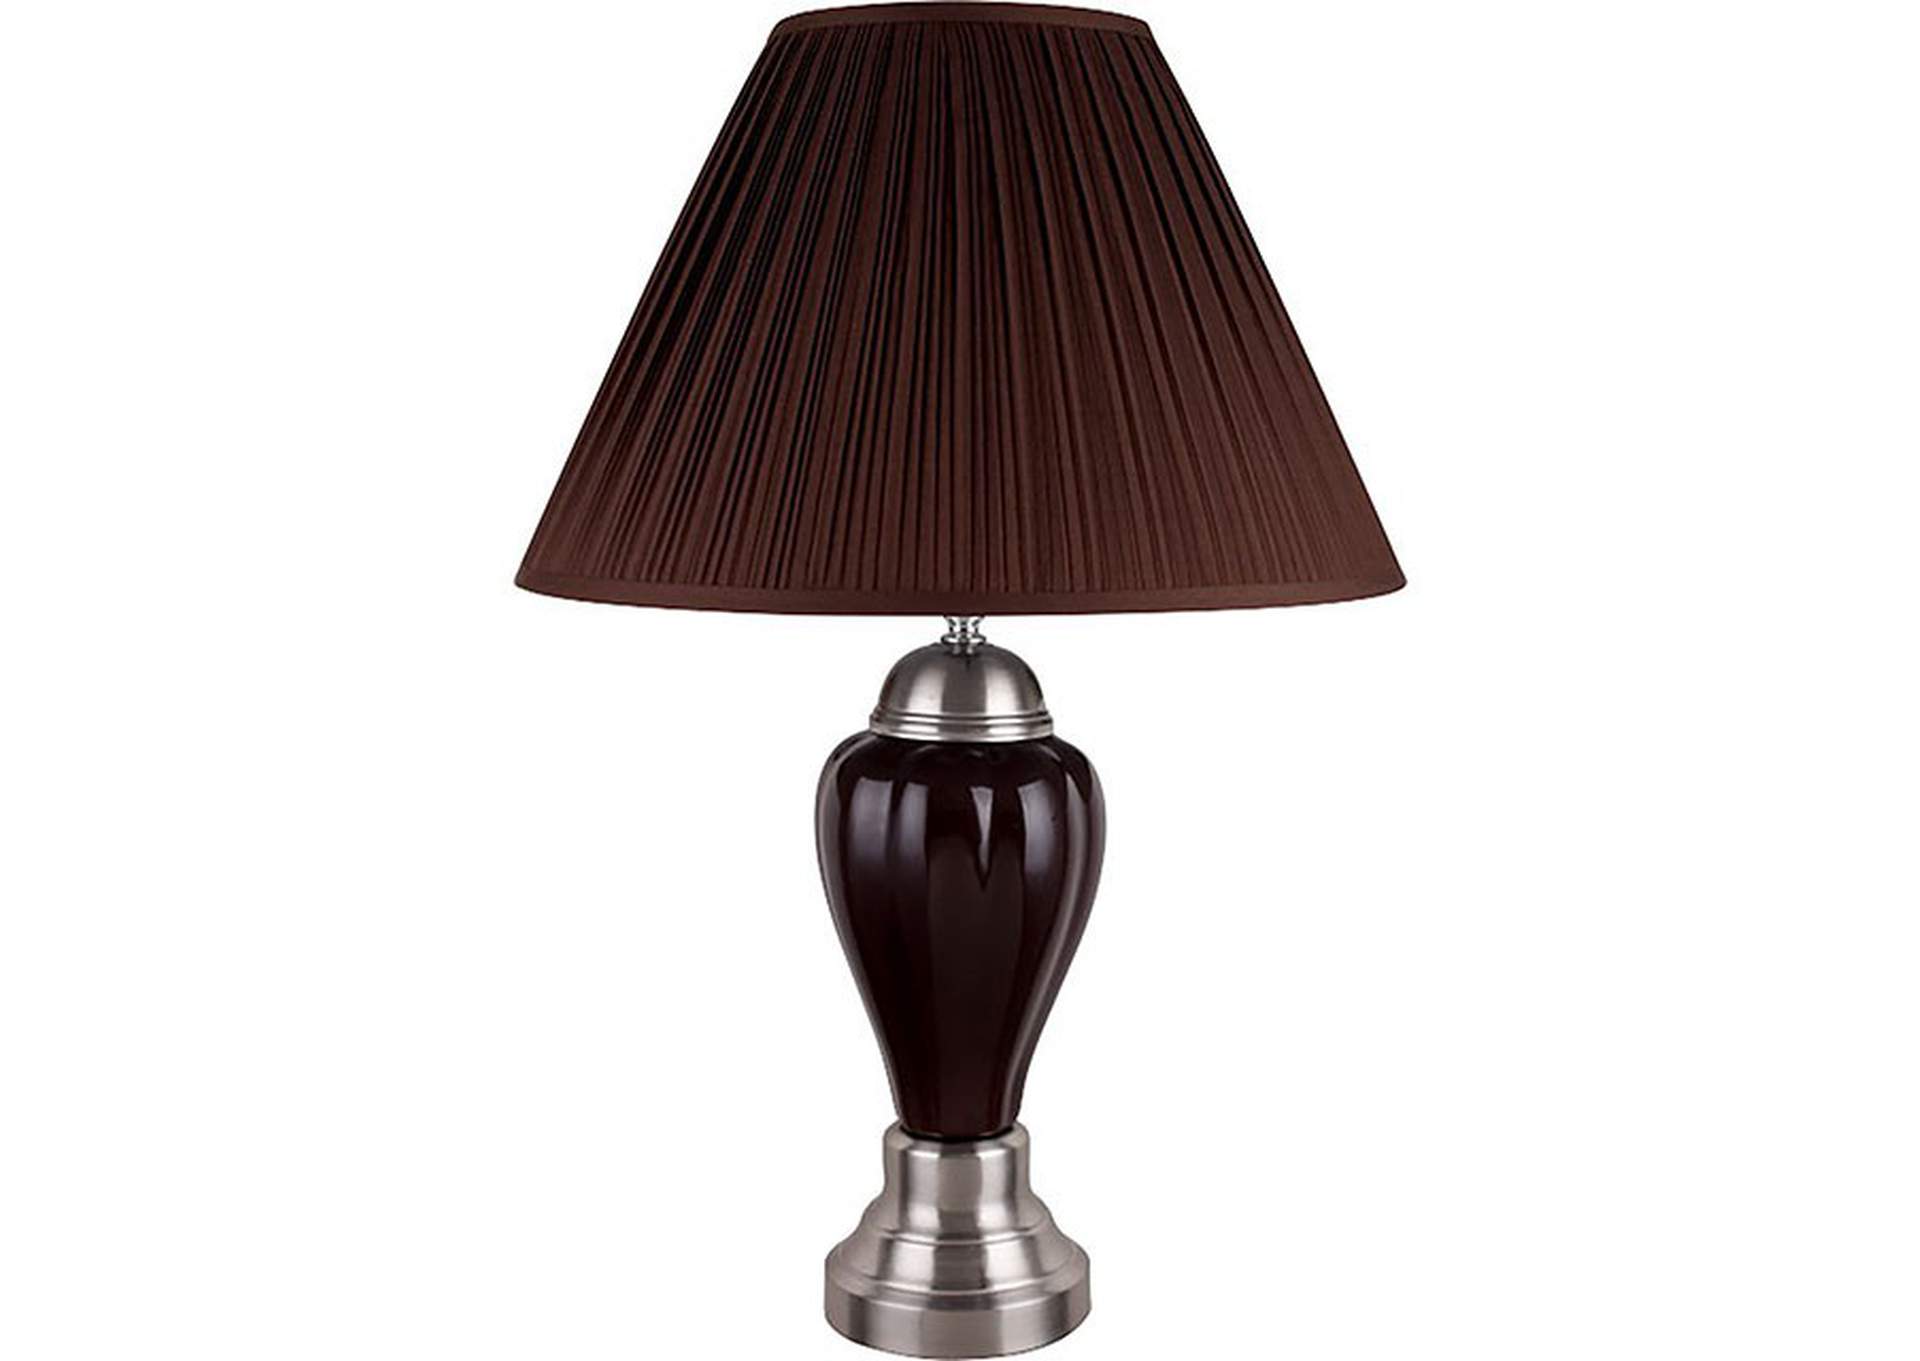 Hanna Espresso Table Lamp,Furniture of America